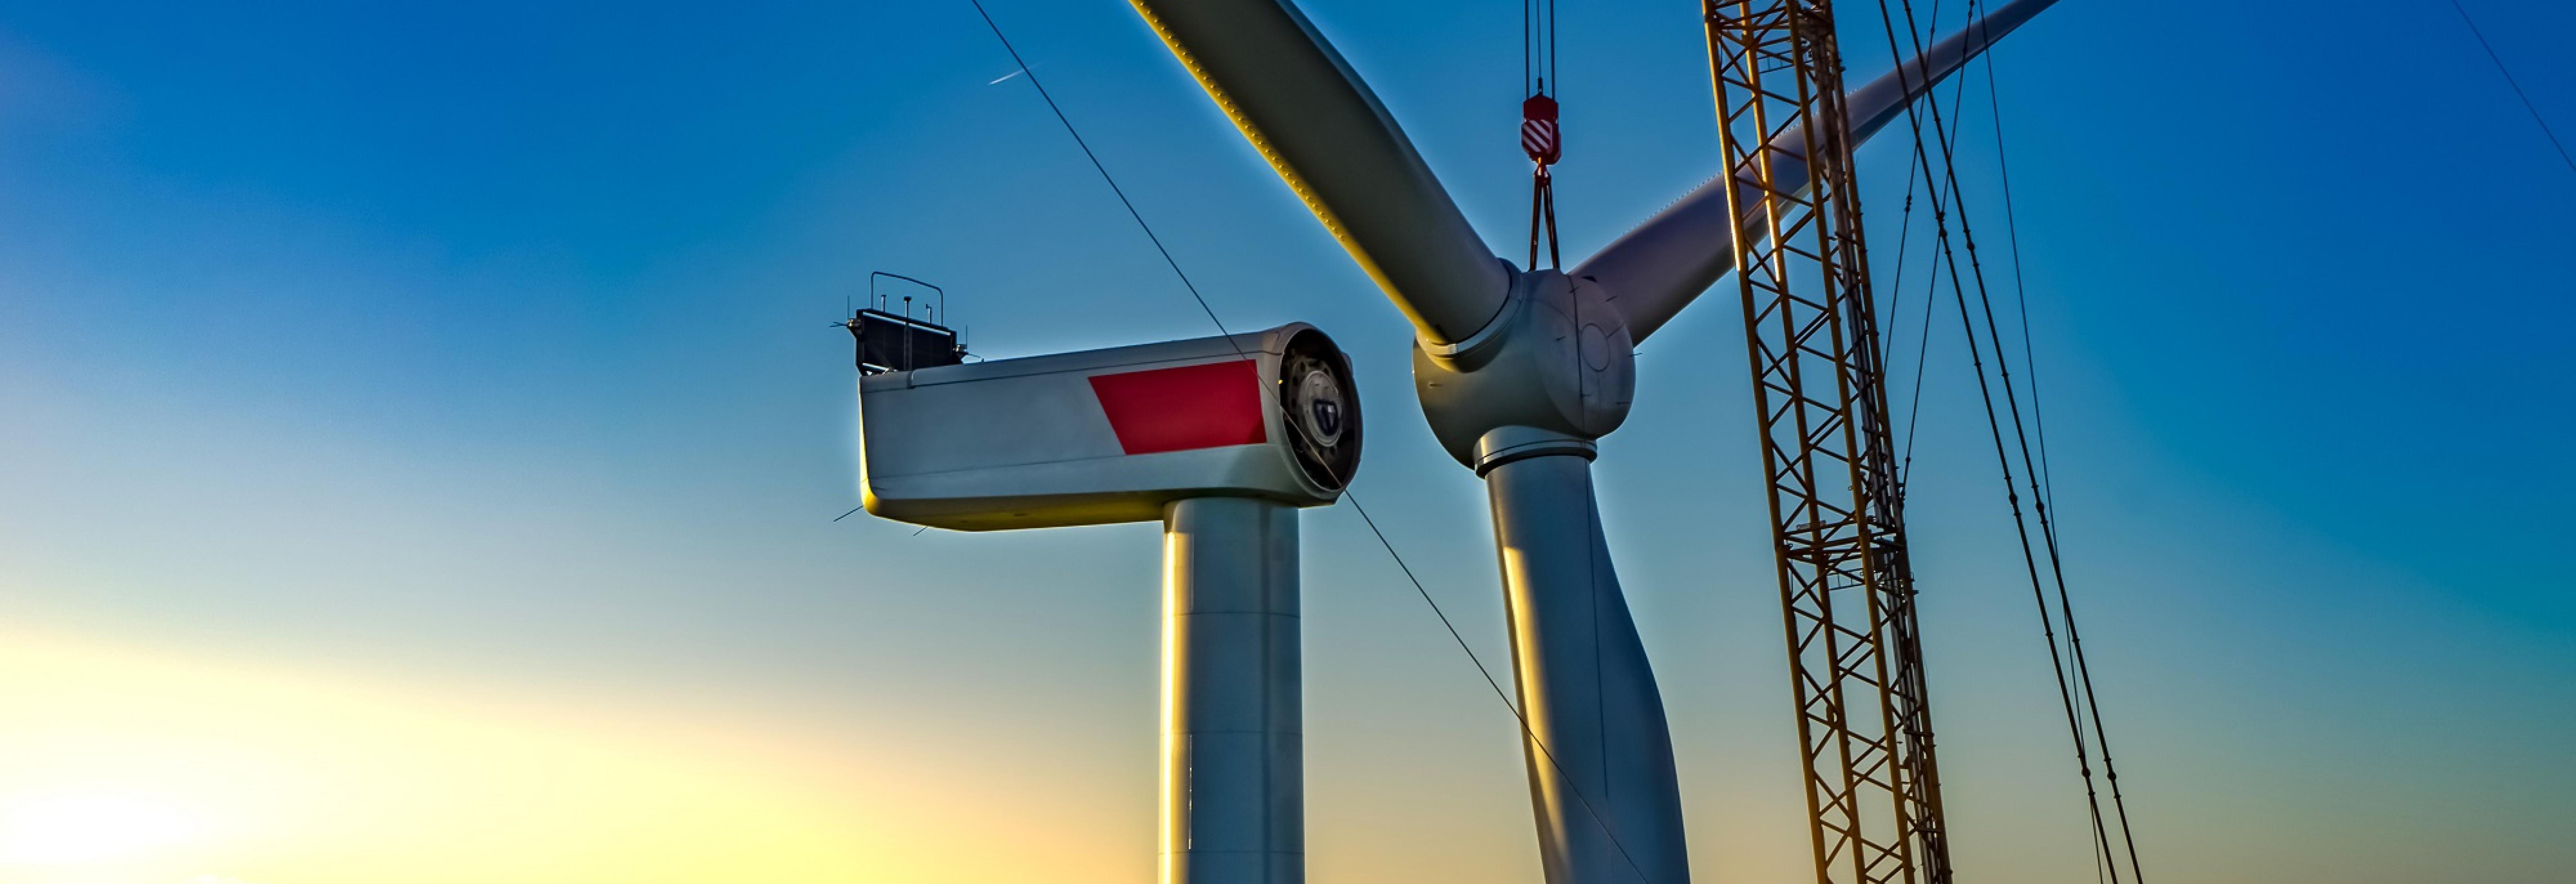 Repowering von Windparks